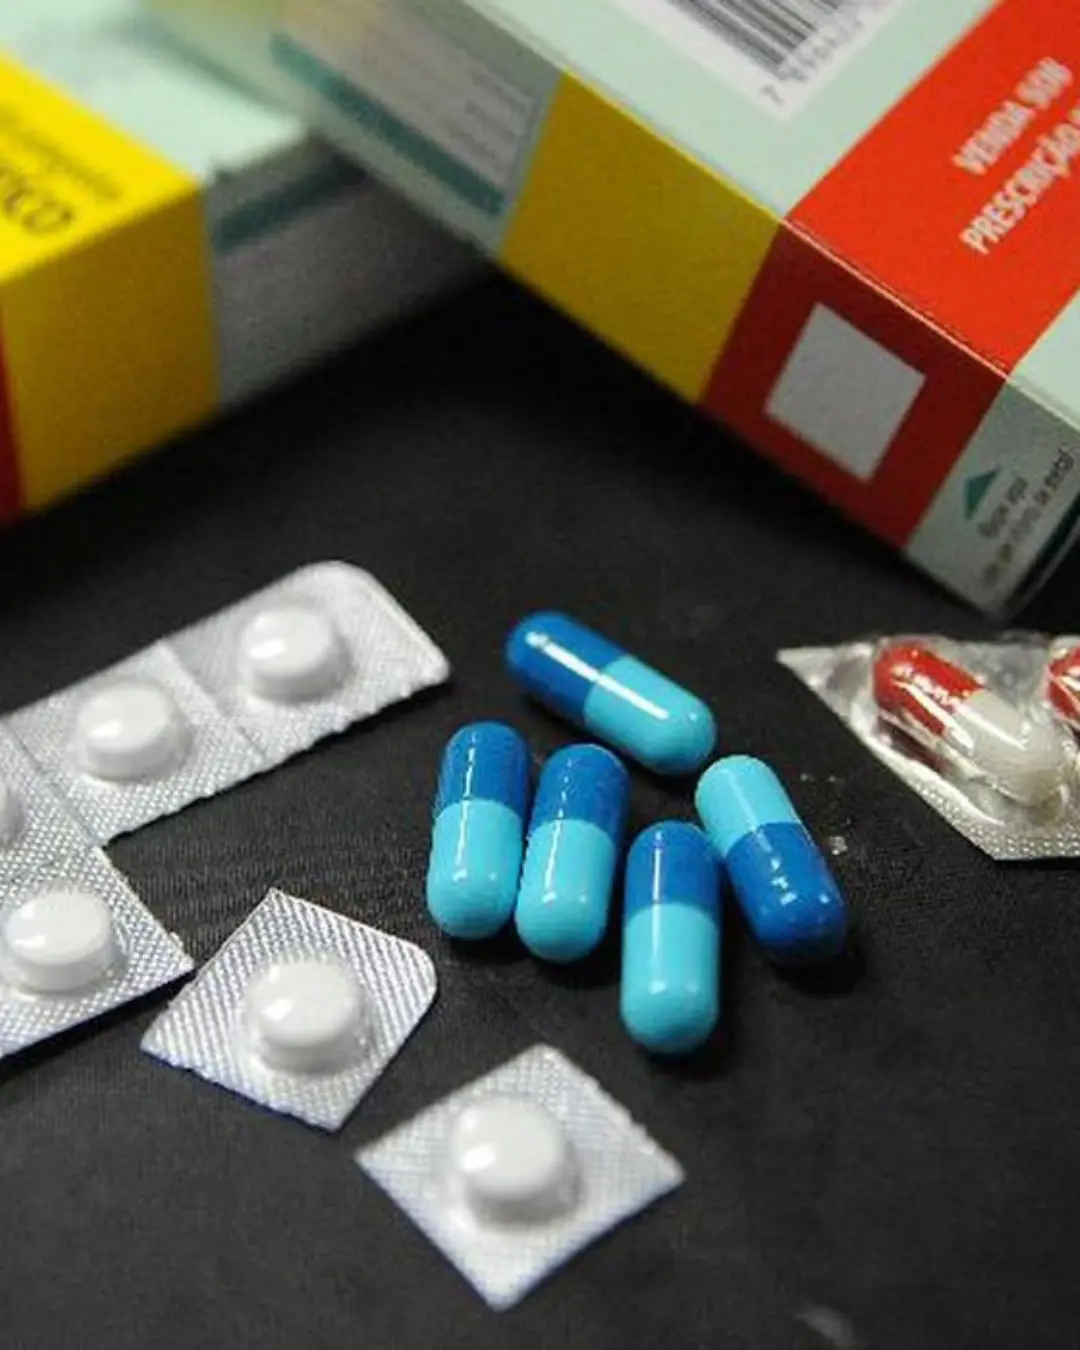 Imagem de destaque - Campanha busca incentivar descarte apropriado de remédios no Brasil